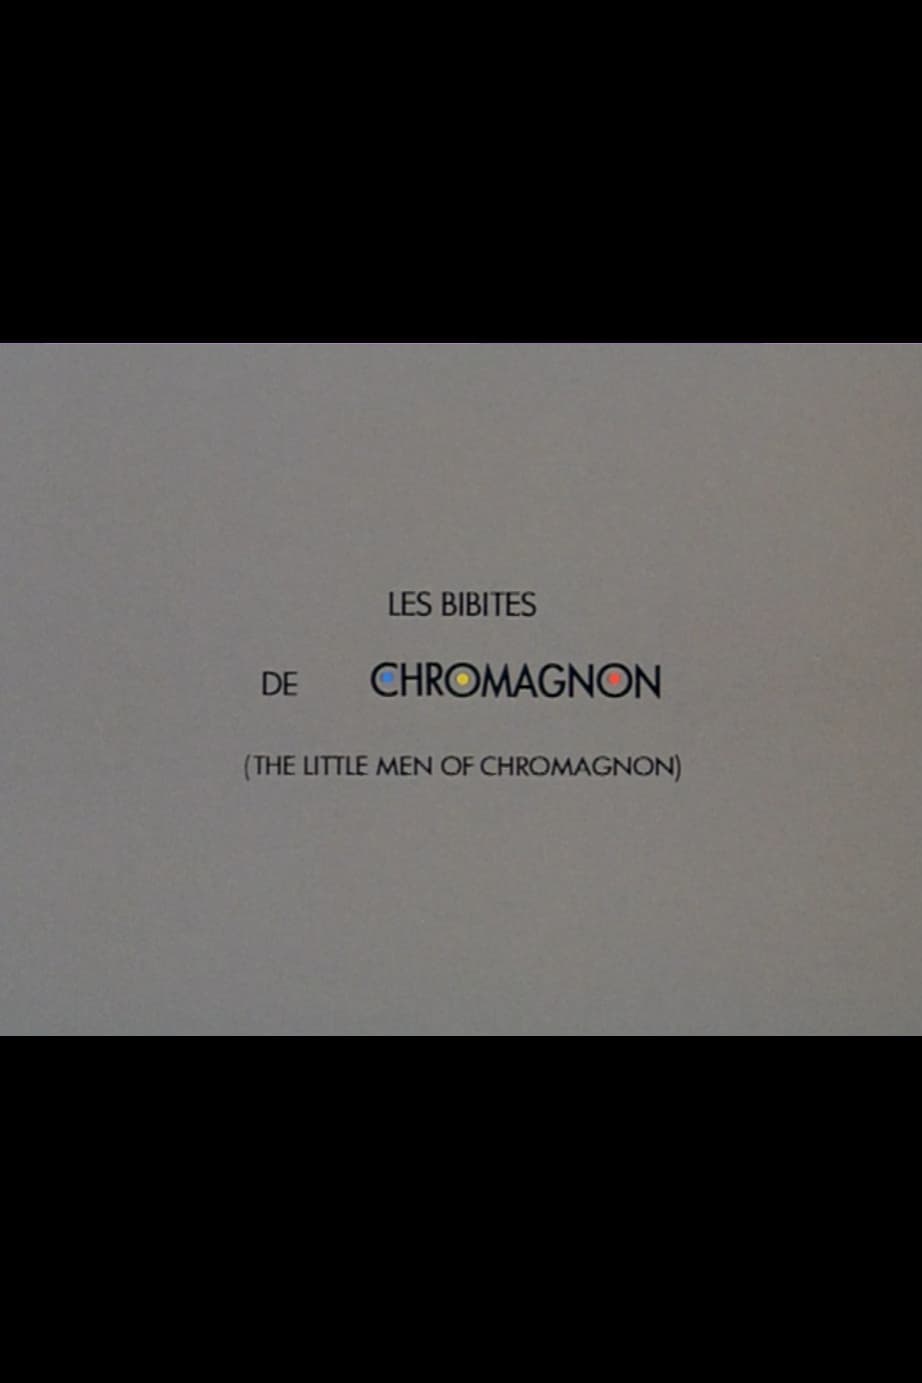 The Little Men of Chromagnon